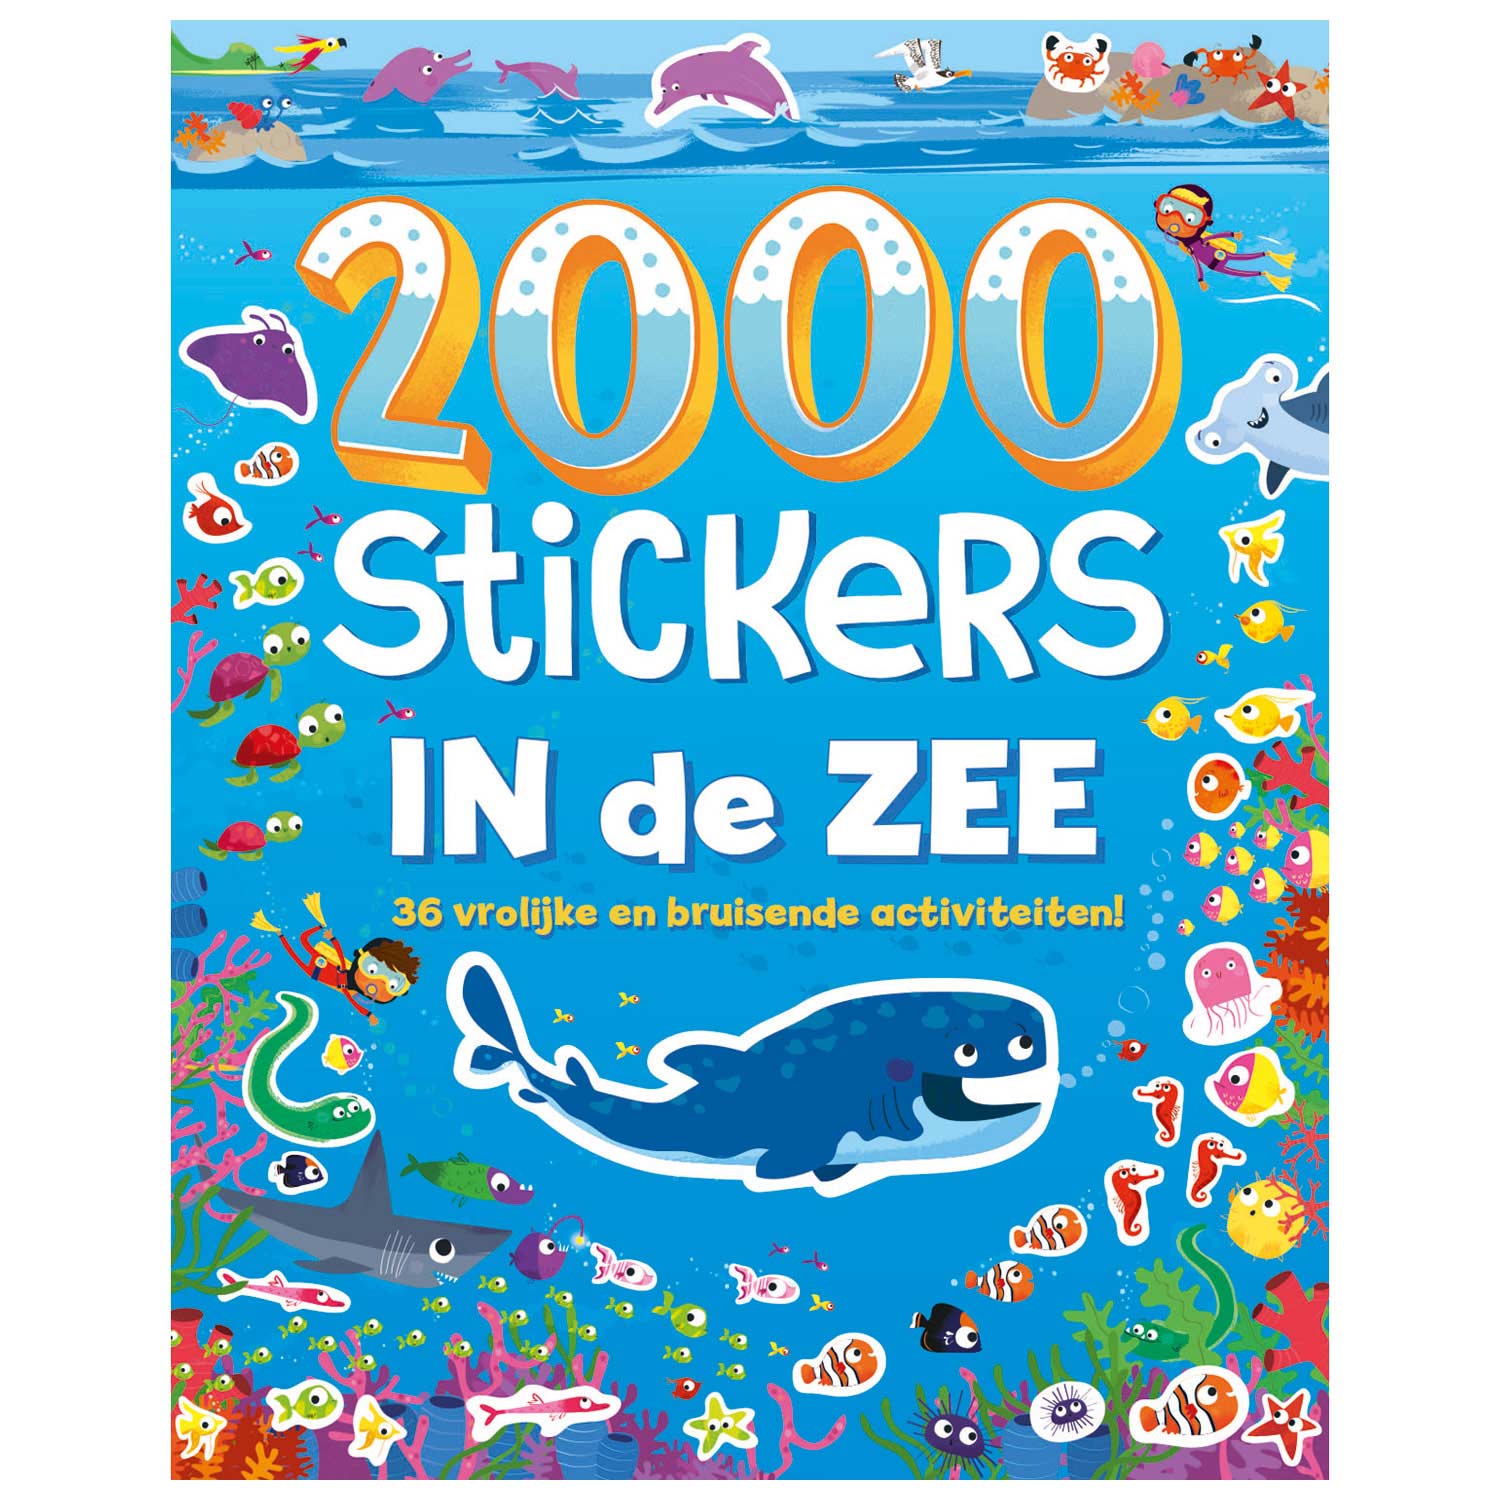 pot Passend Mannelijkheid Stickerboek In de Zee, 2000 stickers ... | Lobbes Speelgoed België